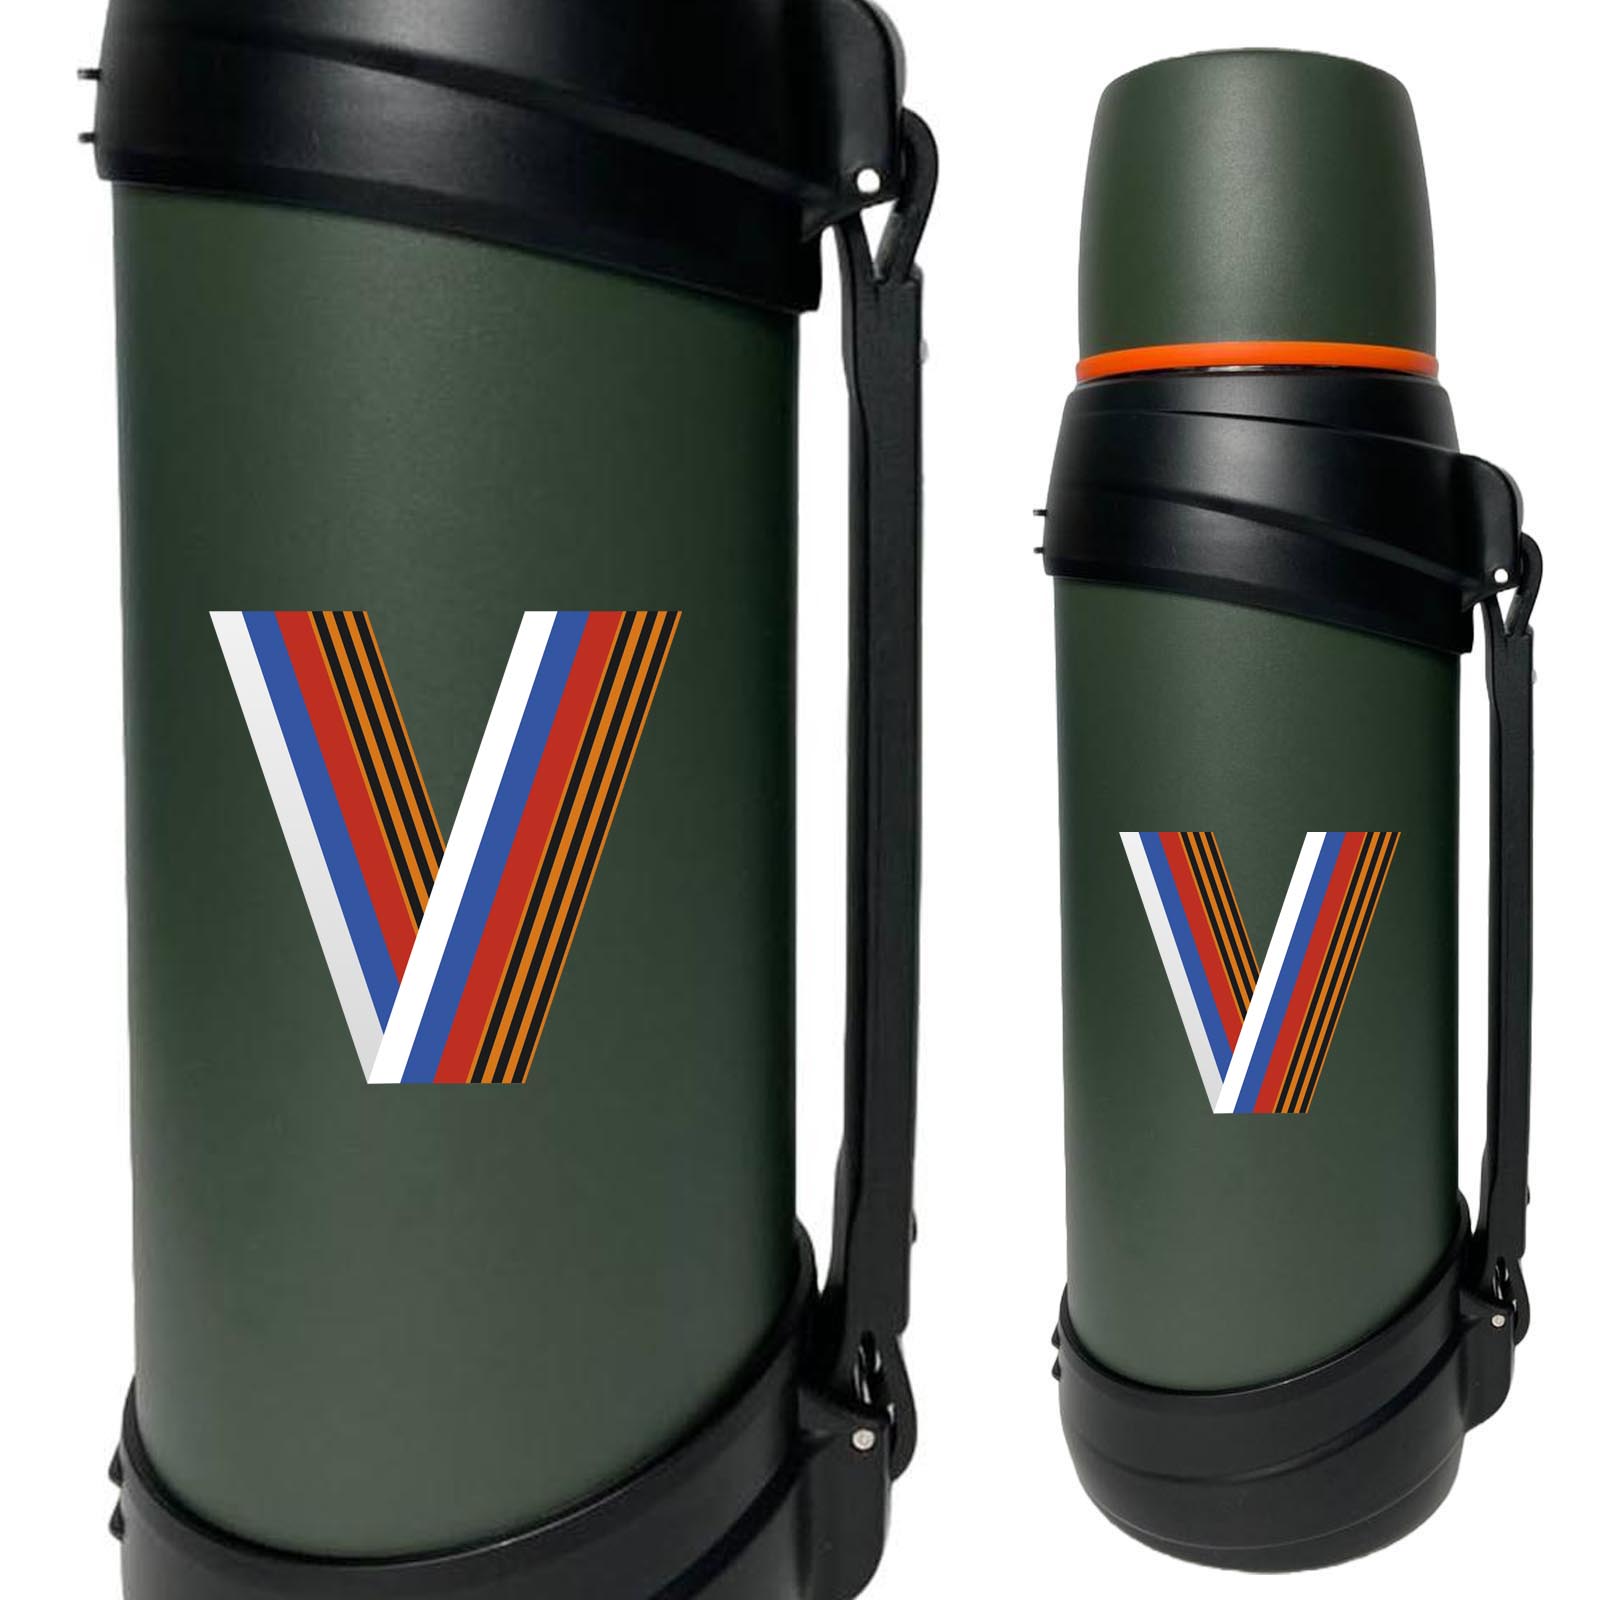 Купить надежный армейский термос с литерой V триколор онлайн